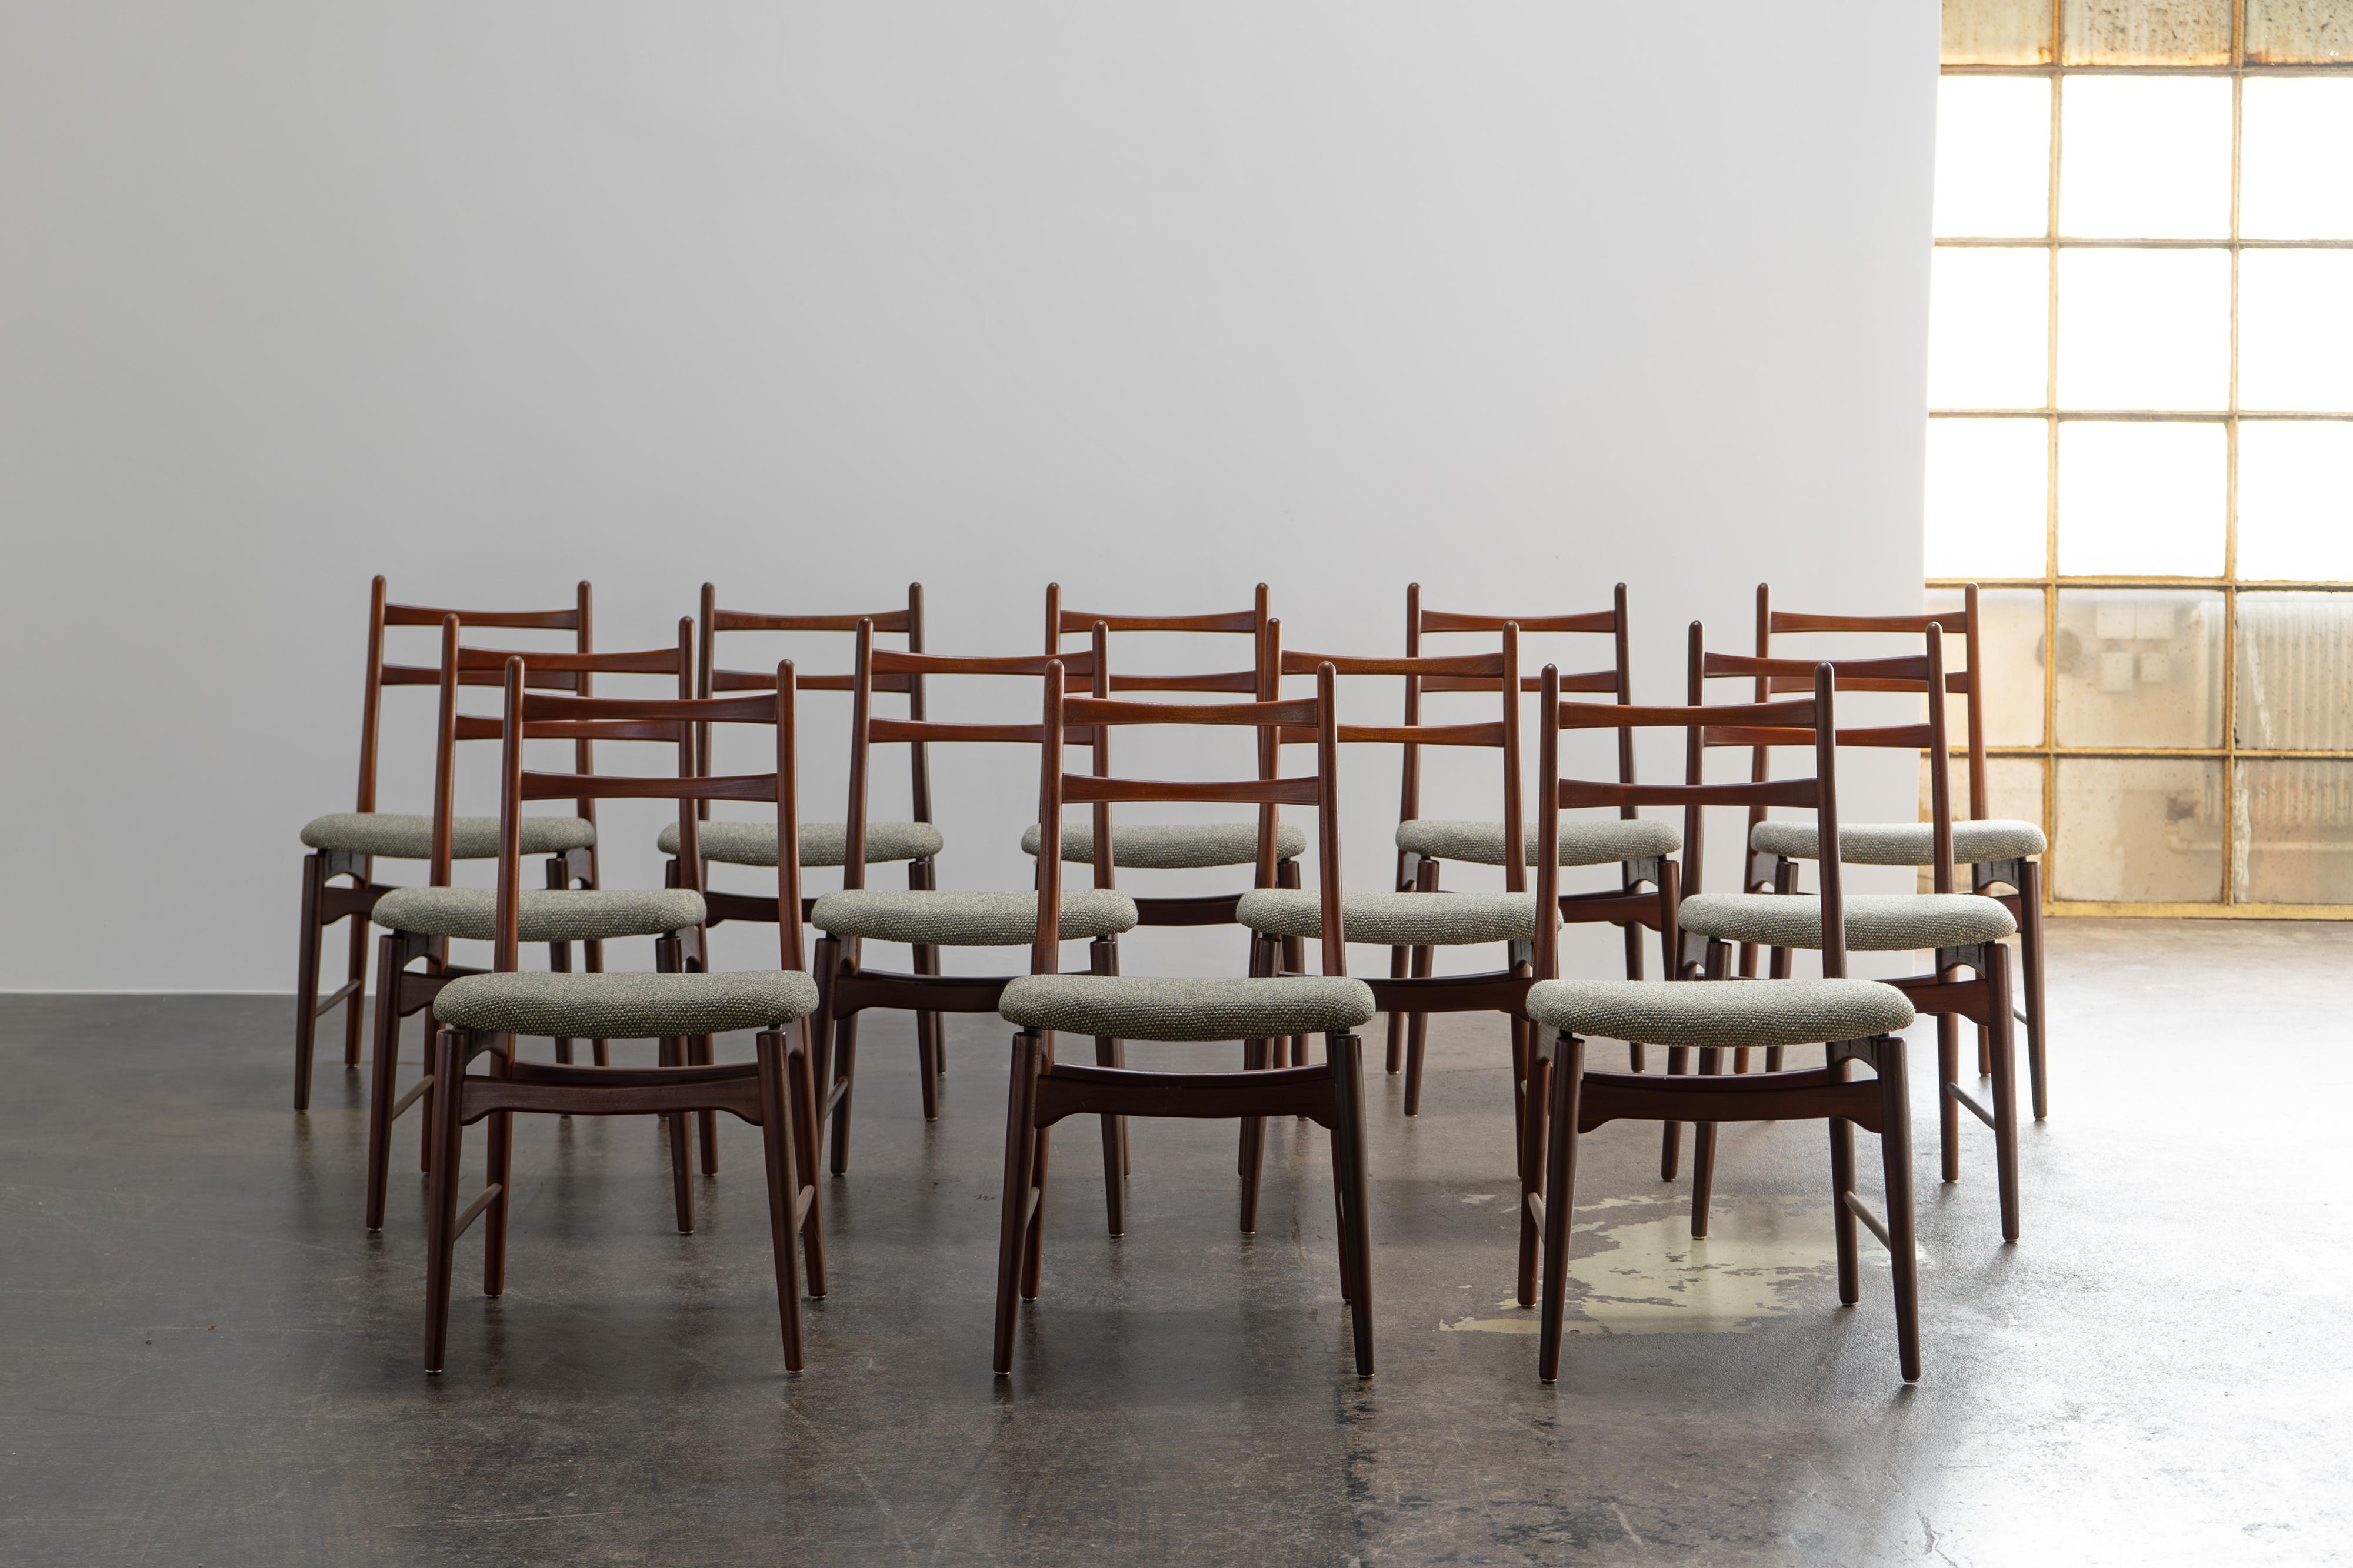 Ensemble de douze chaises de salle à manger par Wilkhahn
Allemagne, 1958

Ensemble composé de douze chaises délicates du milieu du siècle de Wilkhahn. Les chaises ont été fabriquées en Allemagne dans les années 1950/60 et ont été retapissées avec un